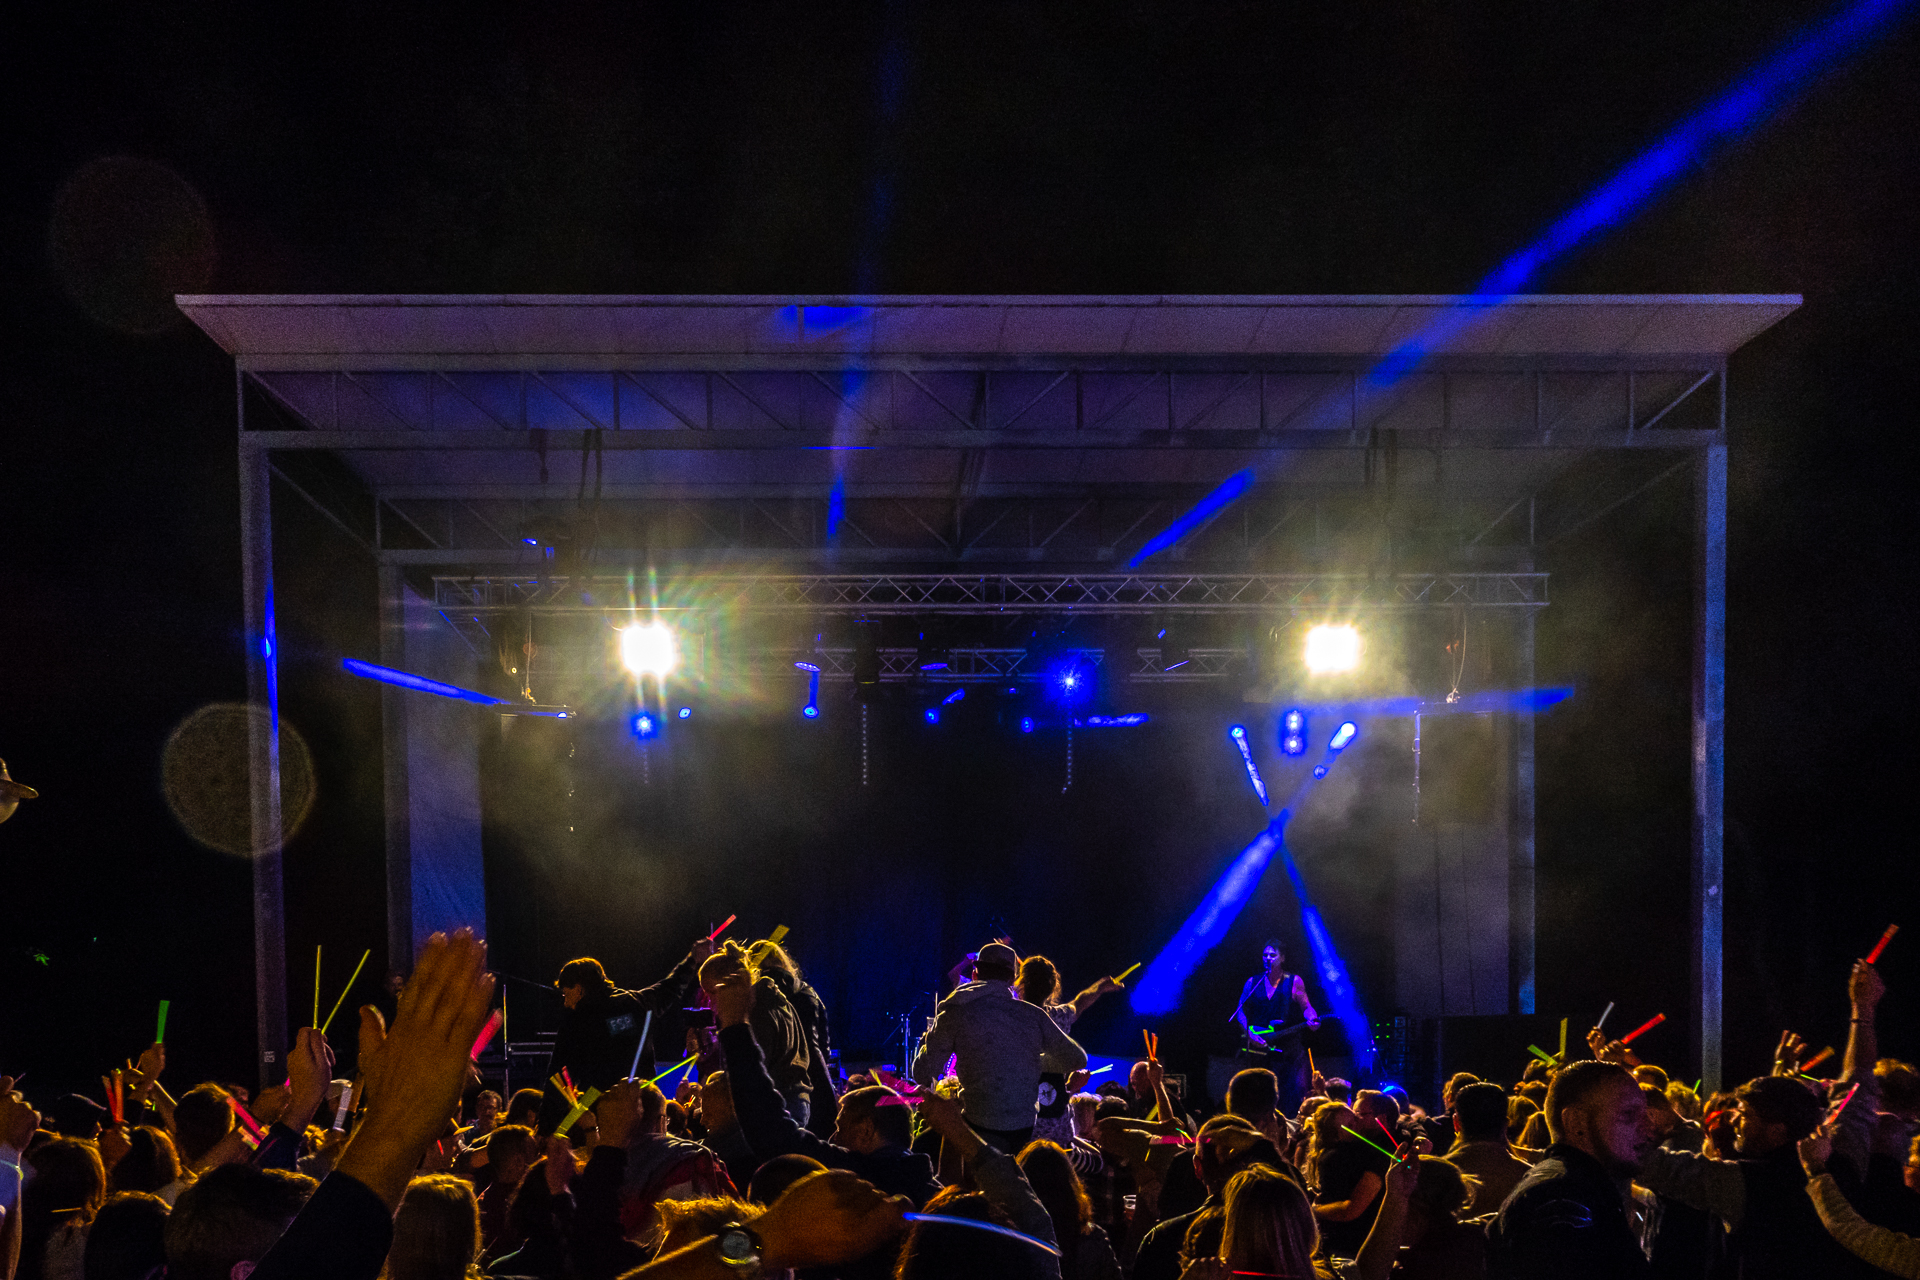 Publikum vor einer nächtlichen Musikbühne mit blauen Scheinwerferstrahlen